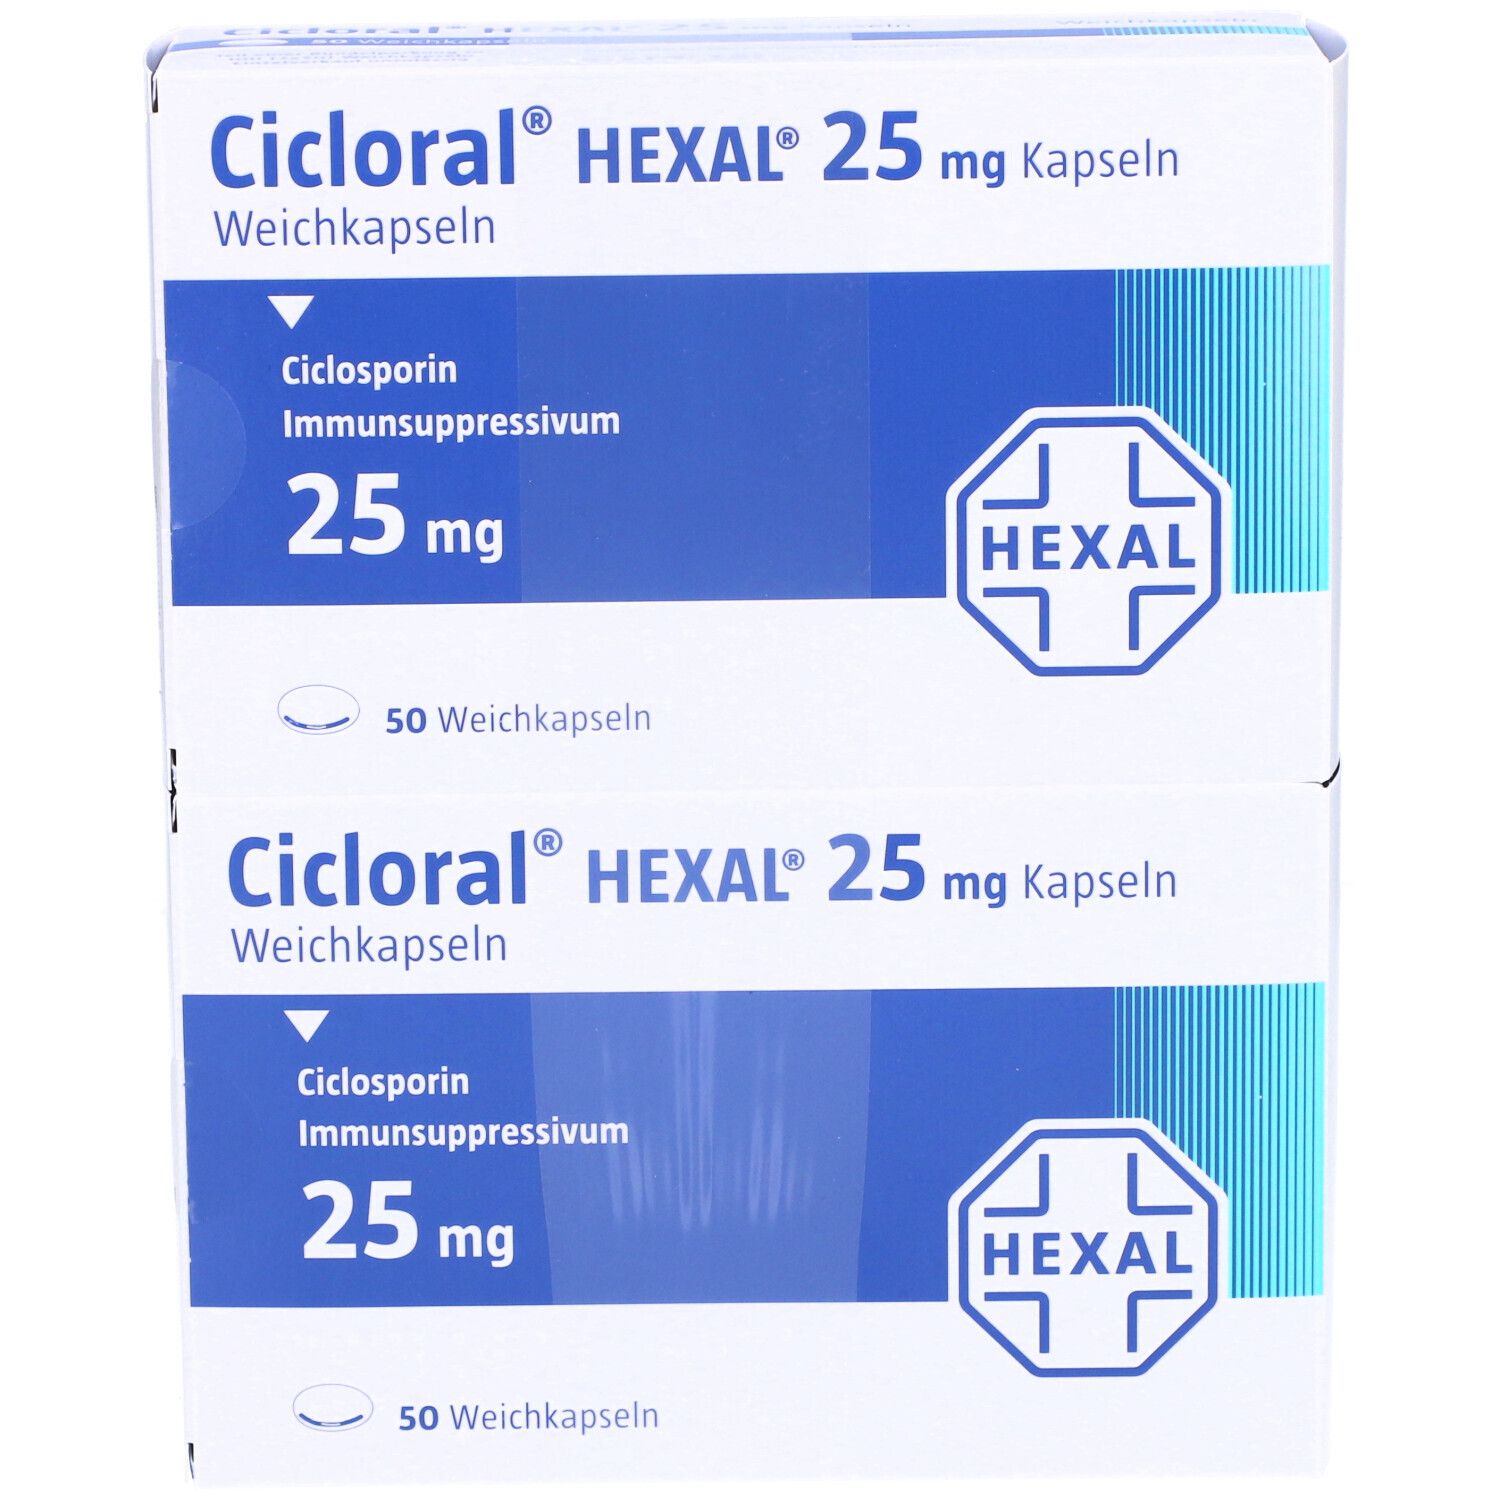 Cicloral® HEXAL® 25 mg